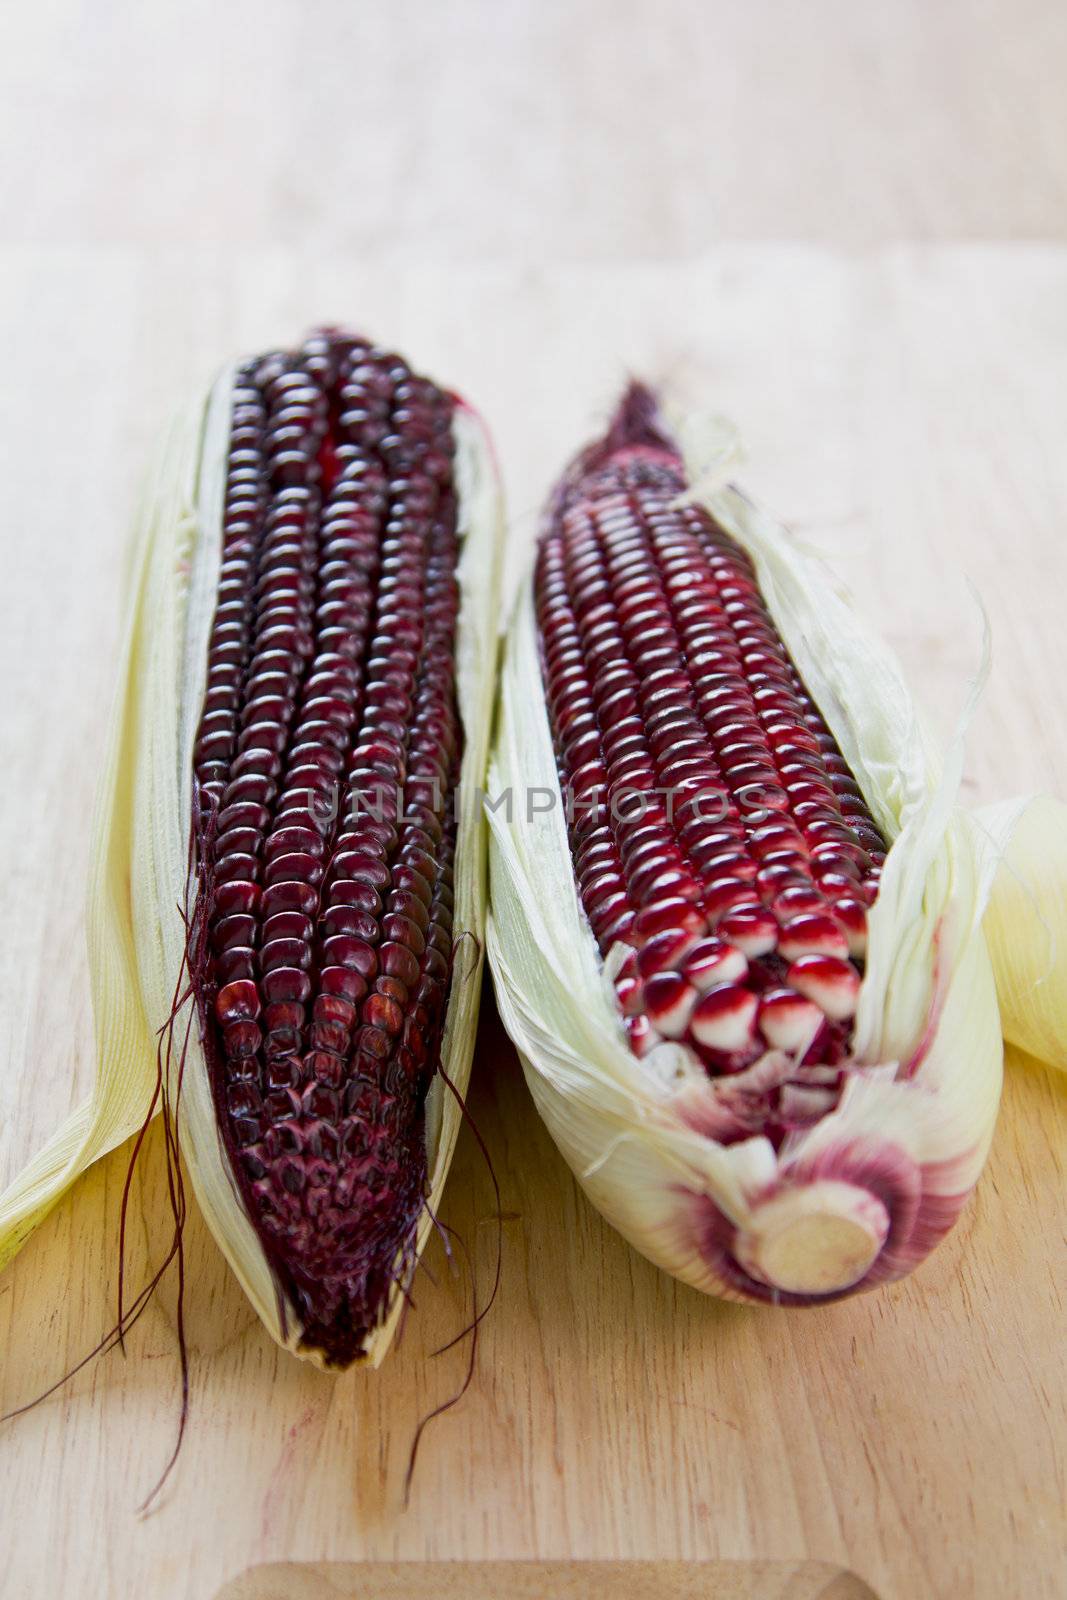 Fresh uncooked purple corn